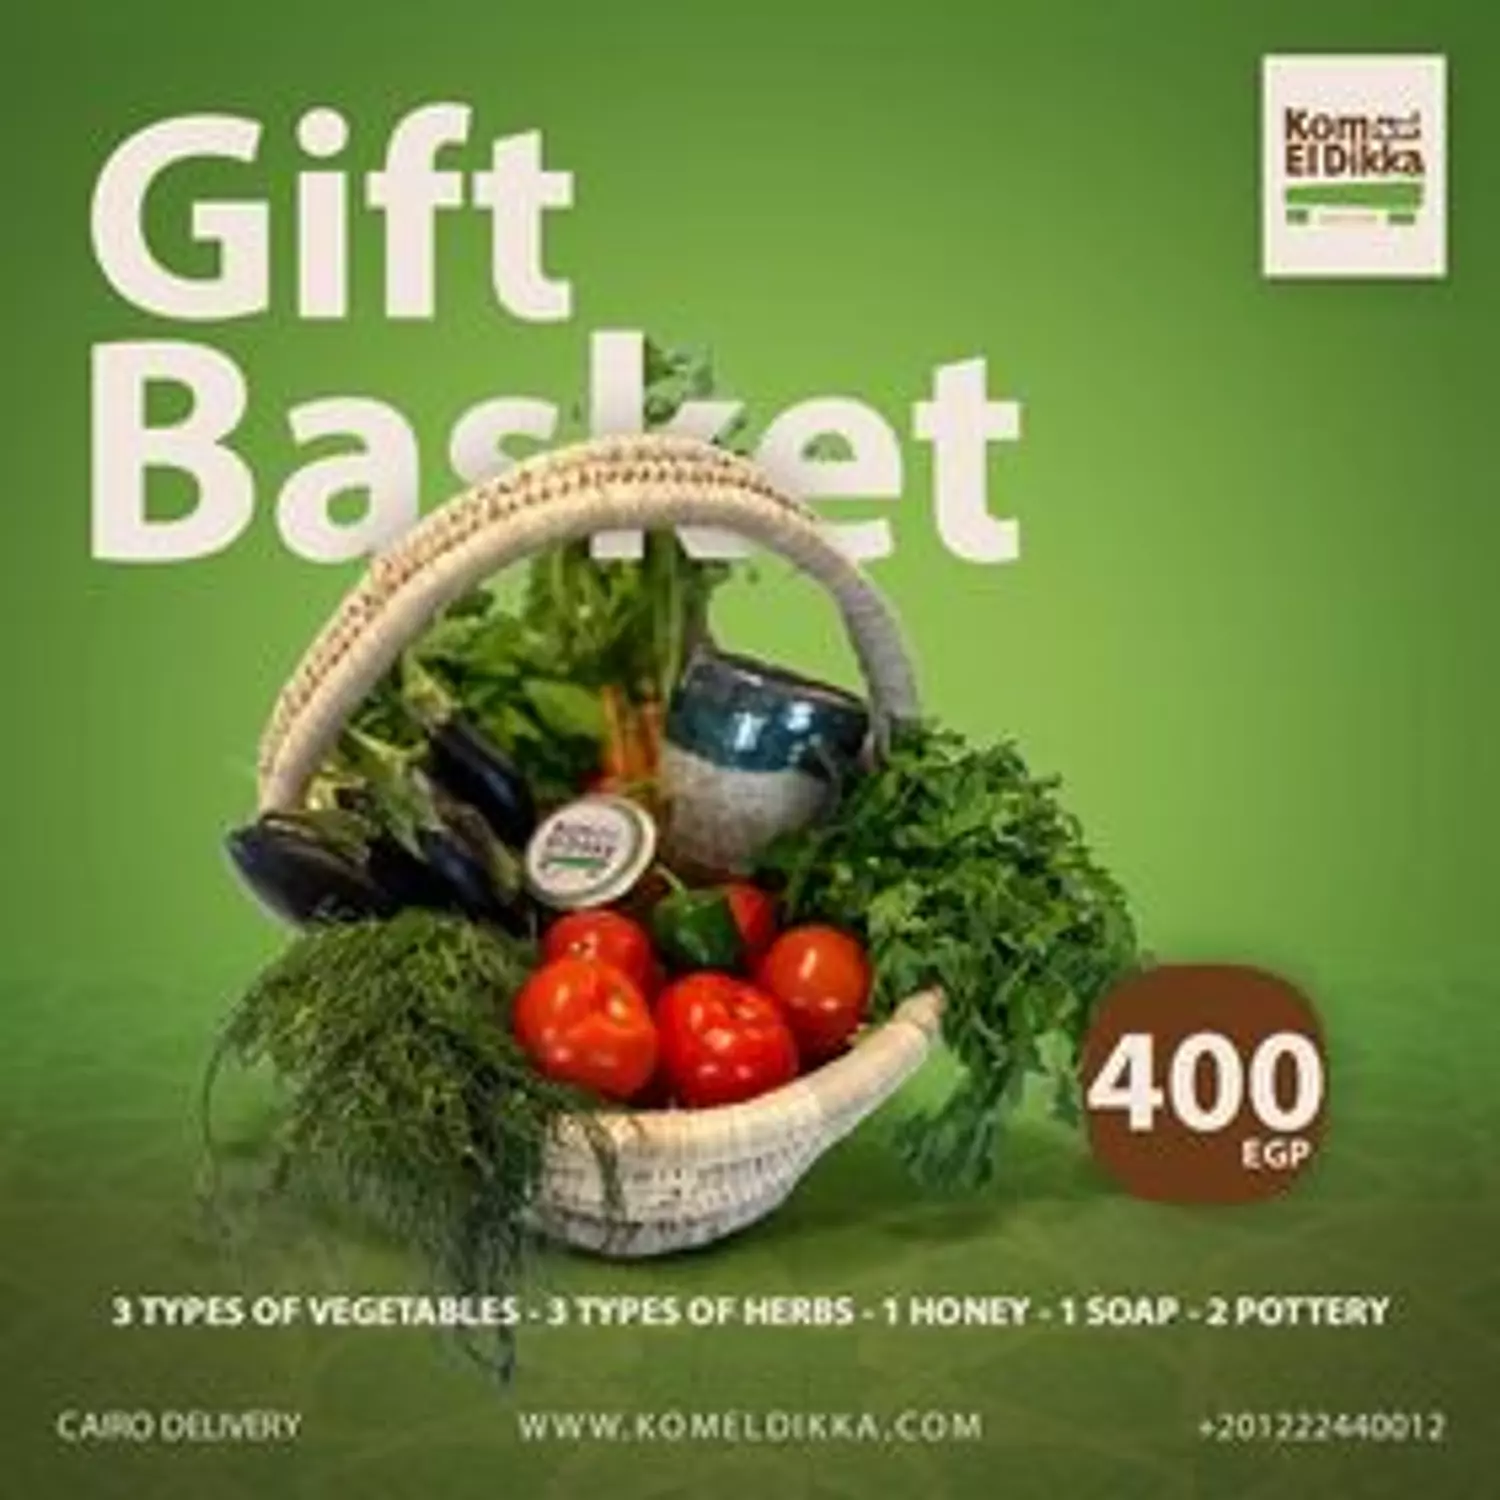 Gift Basket 400 hover image